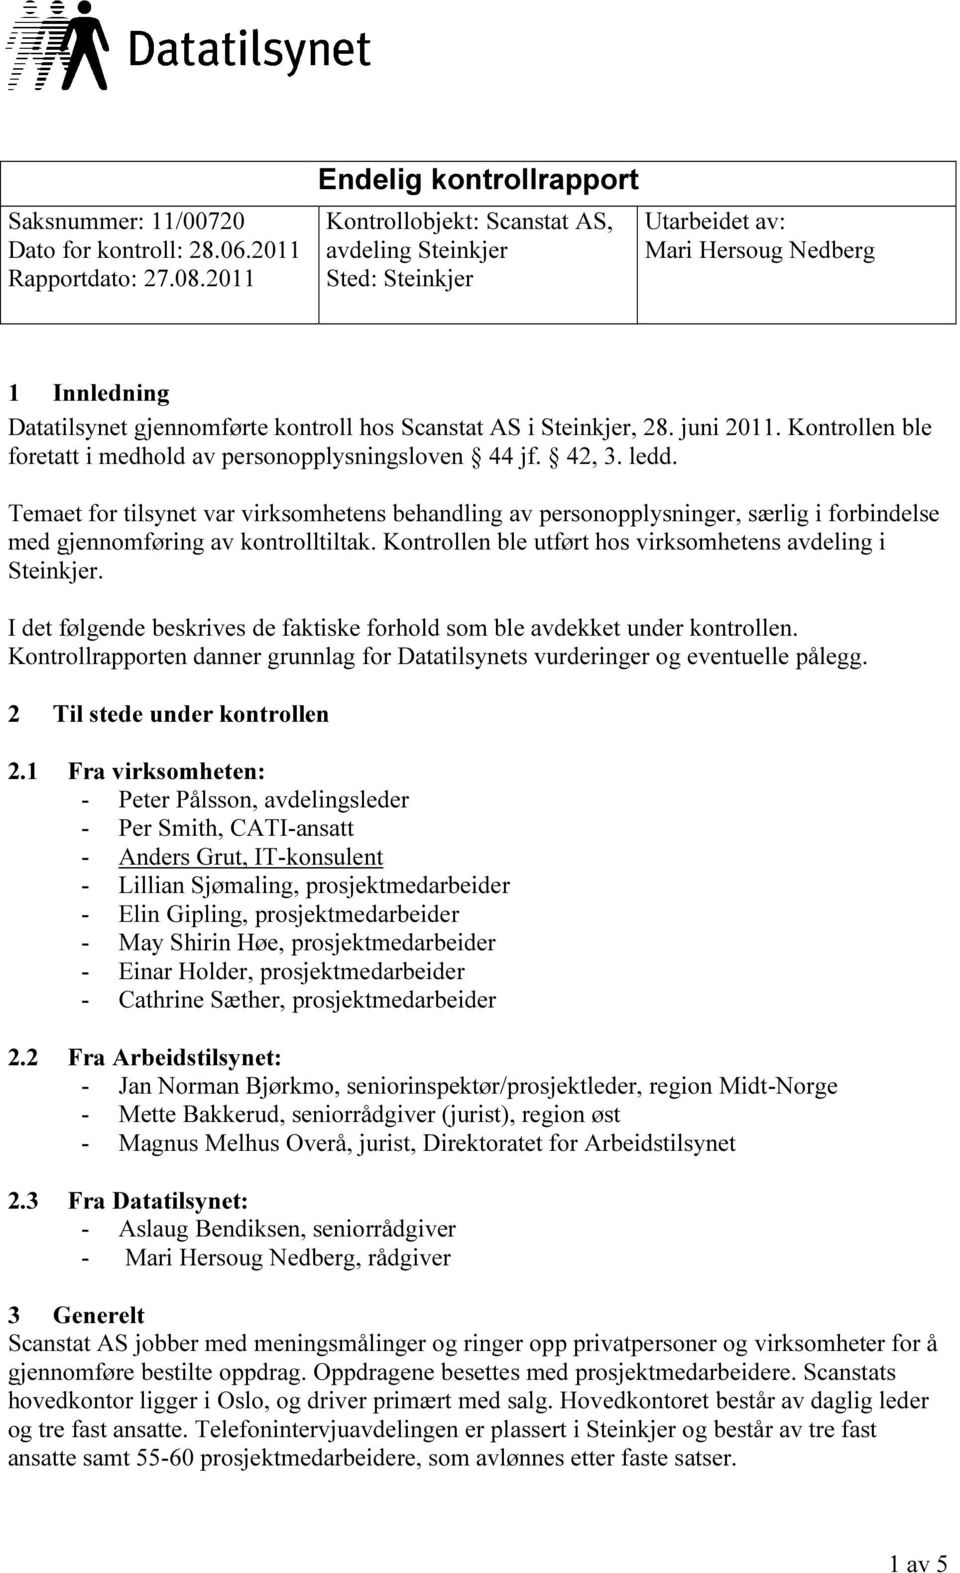 Steinkjer, 28. juni 2011. Kontrollen ble foretatt i medhold av personopplysningsloven 44 jf. 42, 3. ledd.